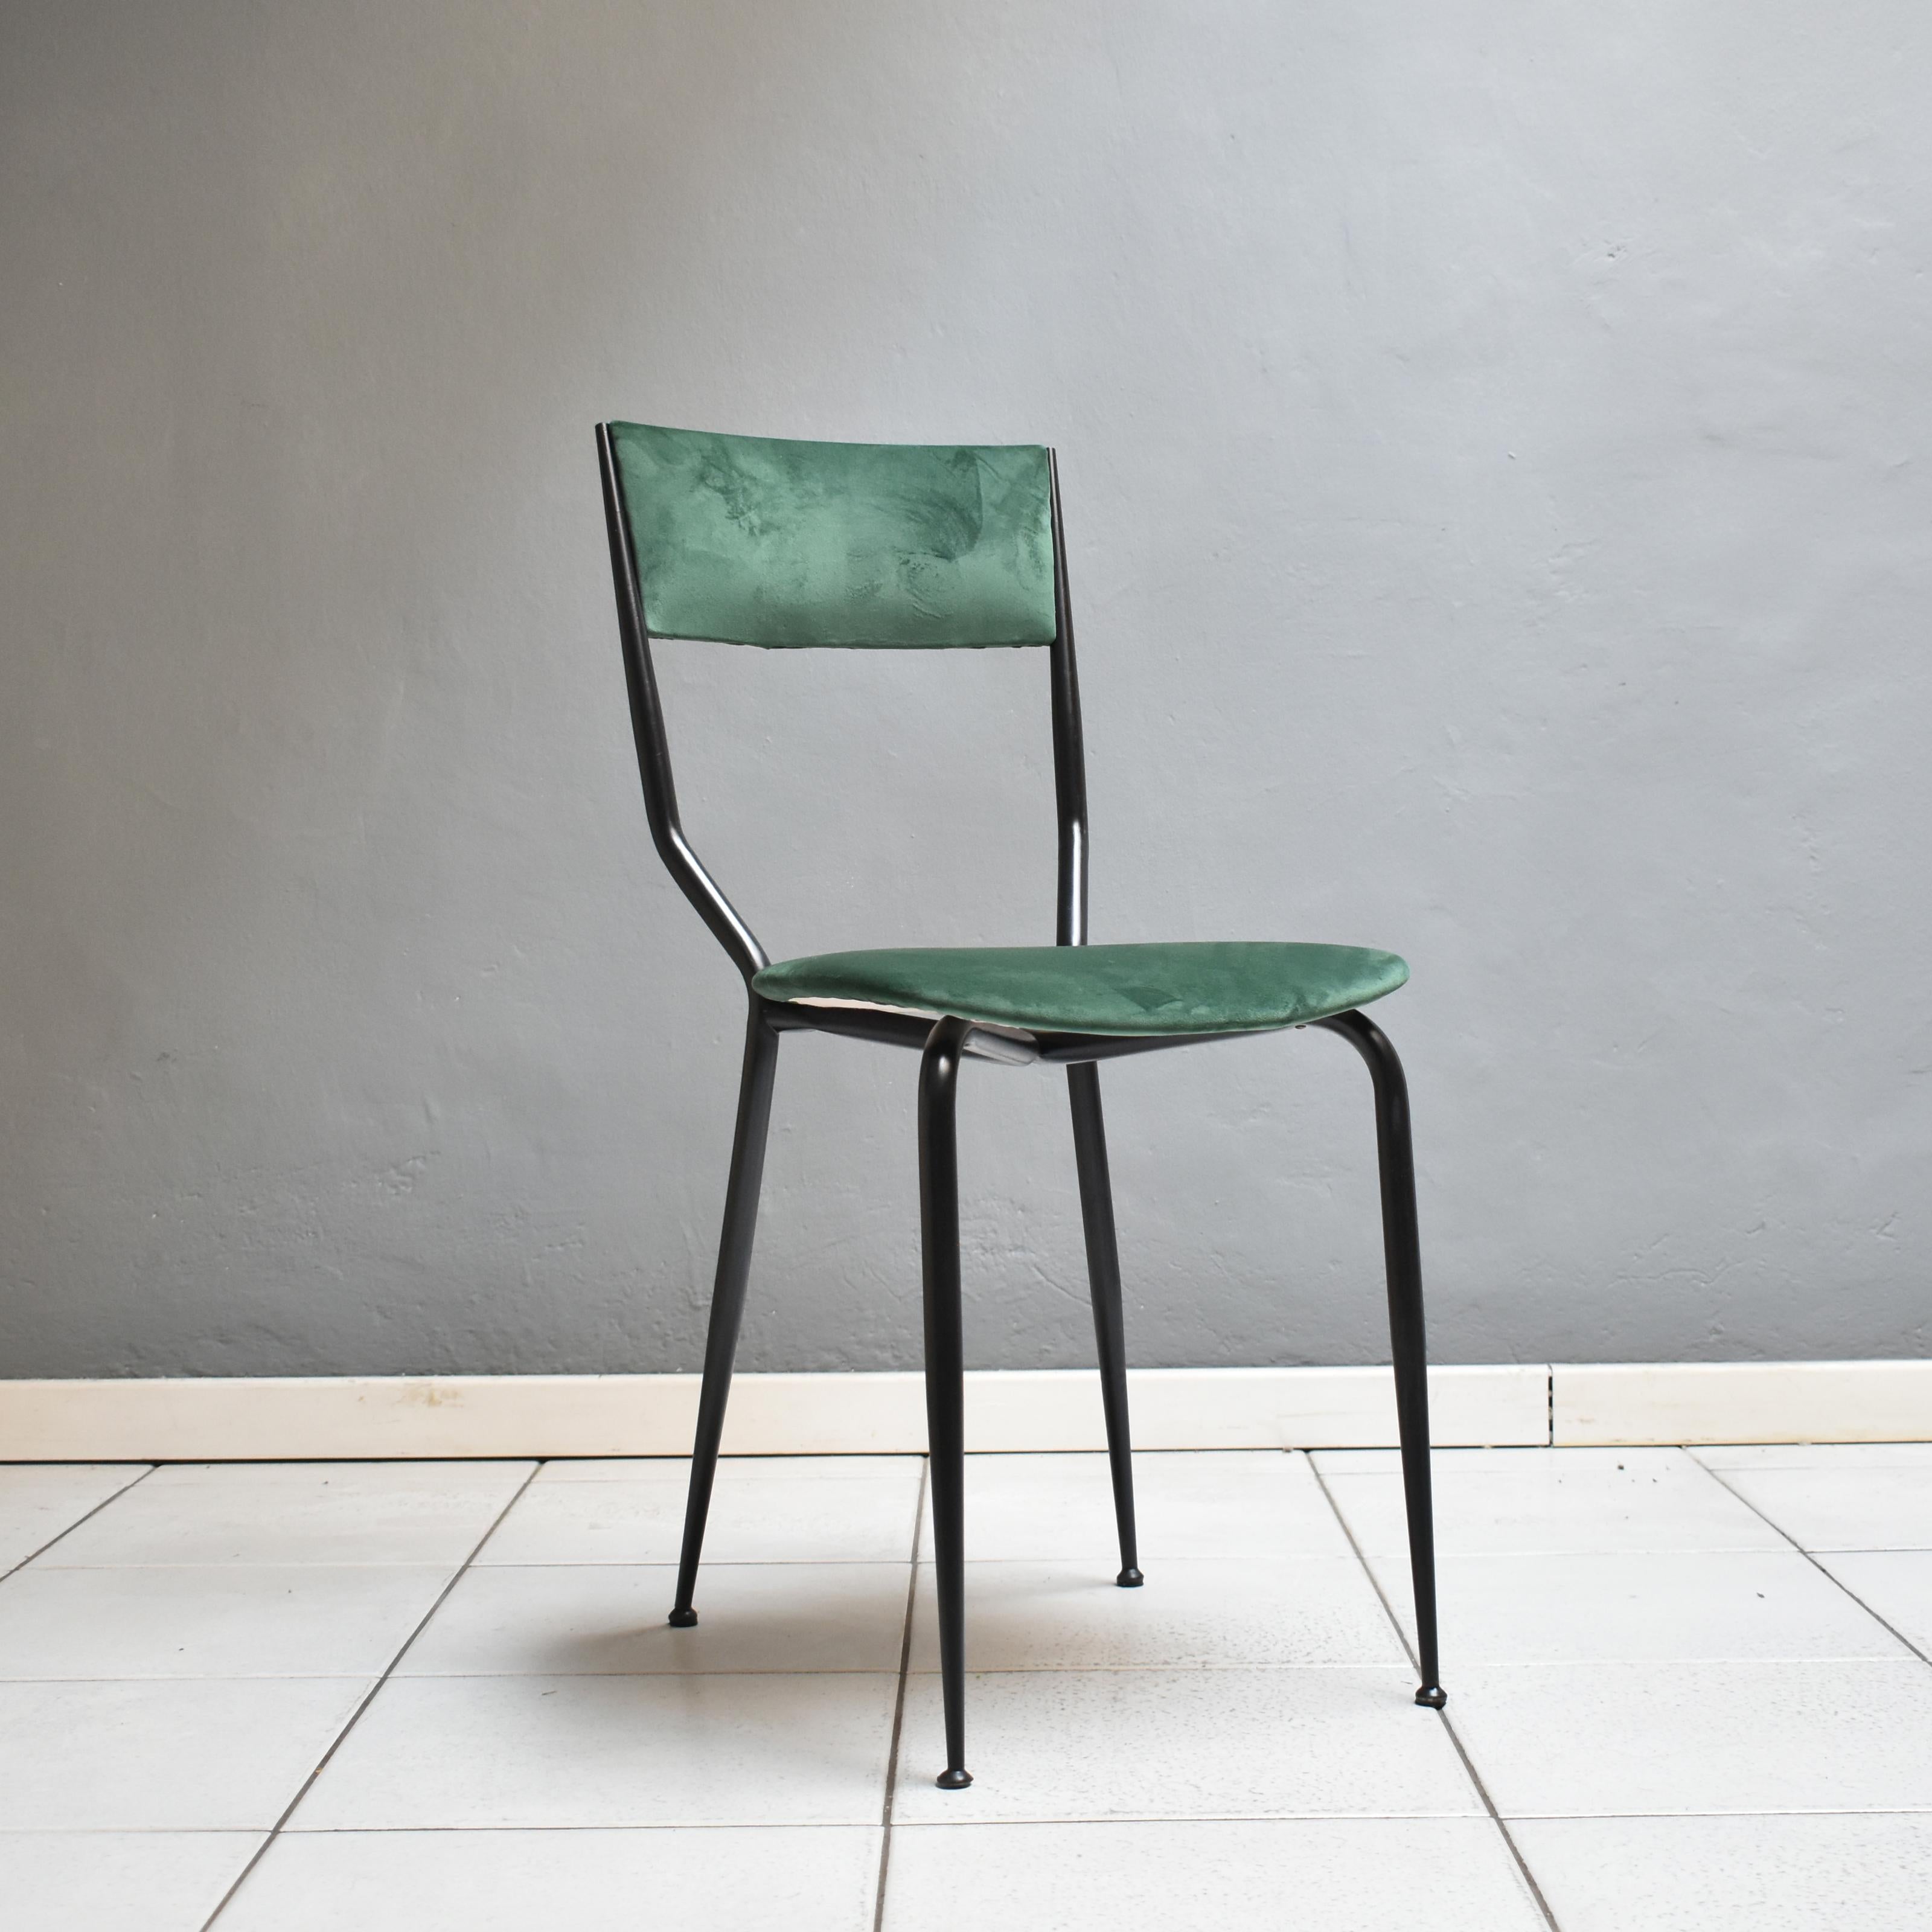 Chaise de salle à manger moderne du milieu du siècle, datant des années 1960, fabrication italienne.
La chaise a un cadre en fer noir et un revêtement en velours vert forêt.
Nouvelle sellerie
Quatre pièces disponibles, autres couleurs disponibles.